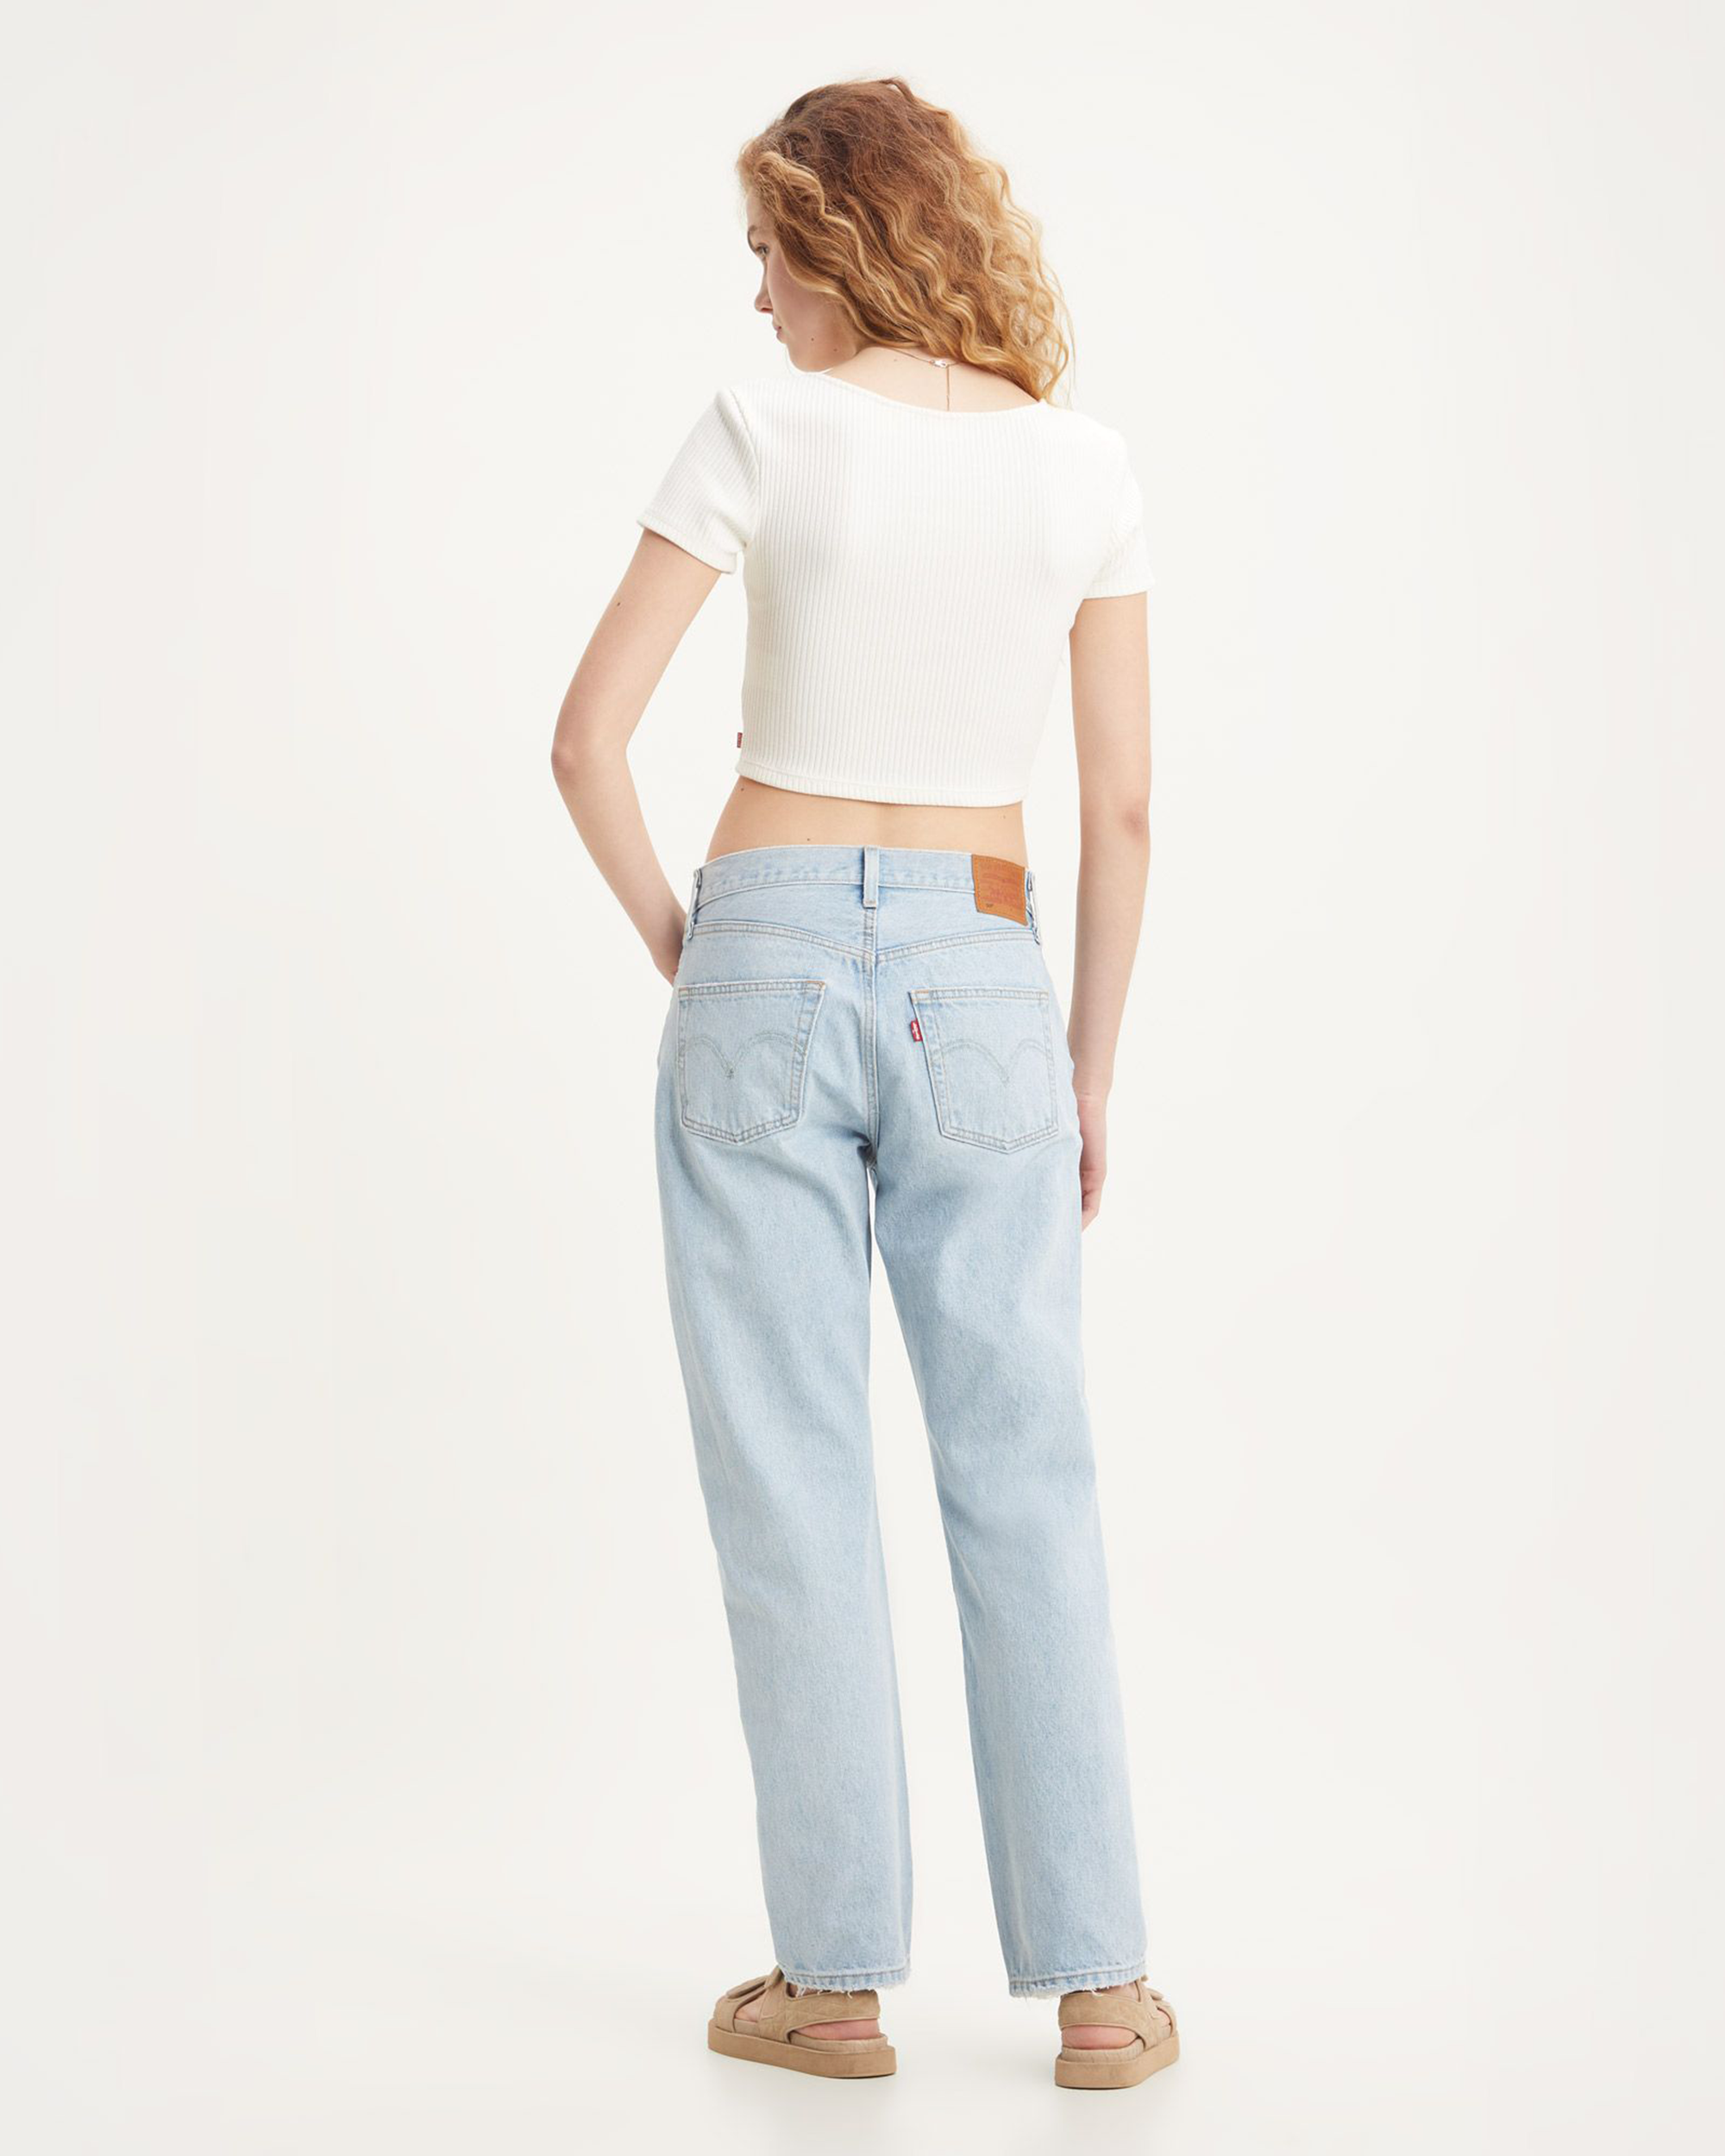 Womens 90s 501 Jeans - Light indigo / Worn In